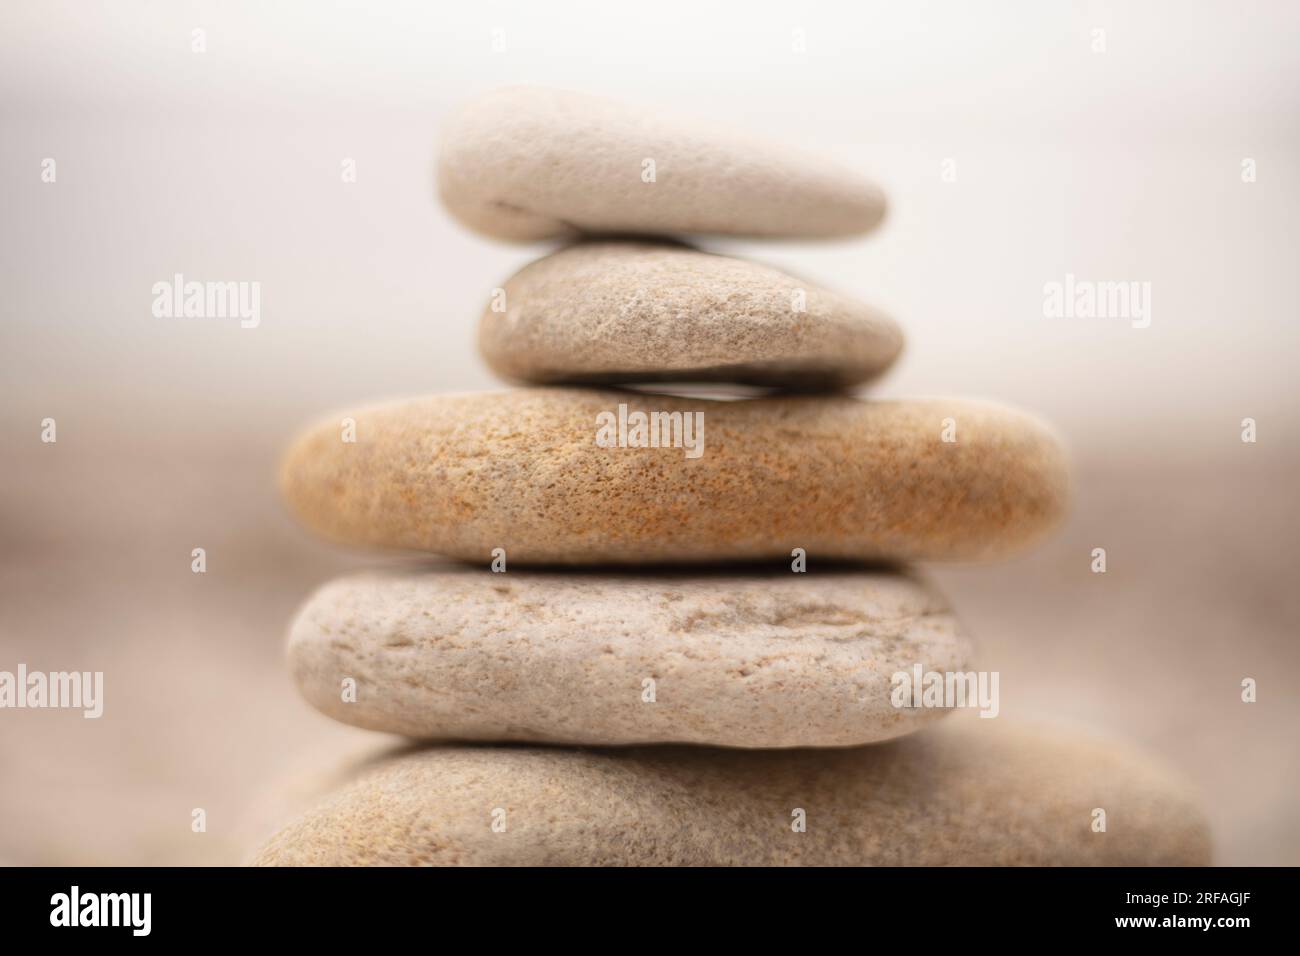 Pile di pietre bianche simili a zen sulla spiaggia che invitano calma e riflessione Foto Stock